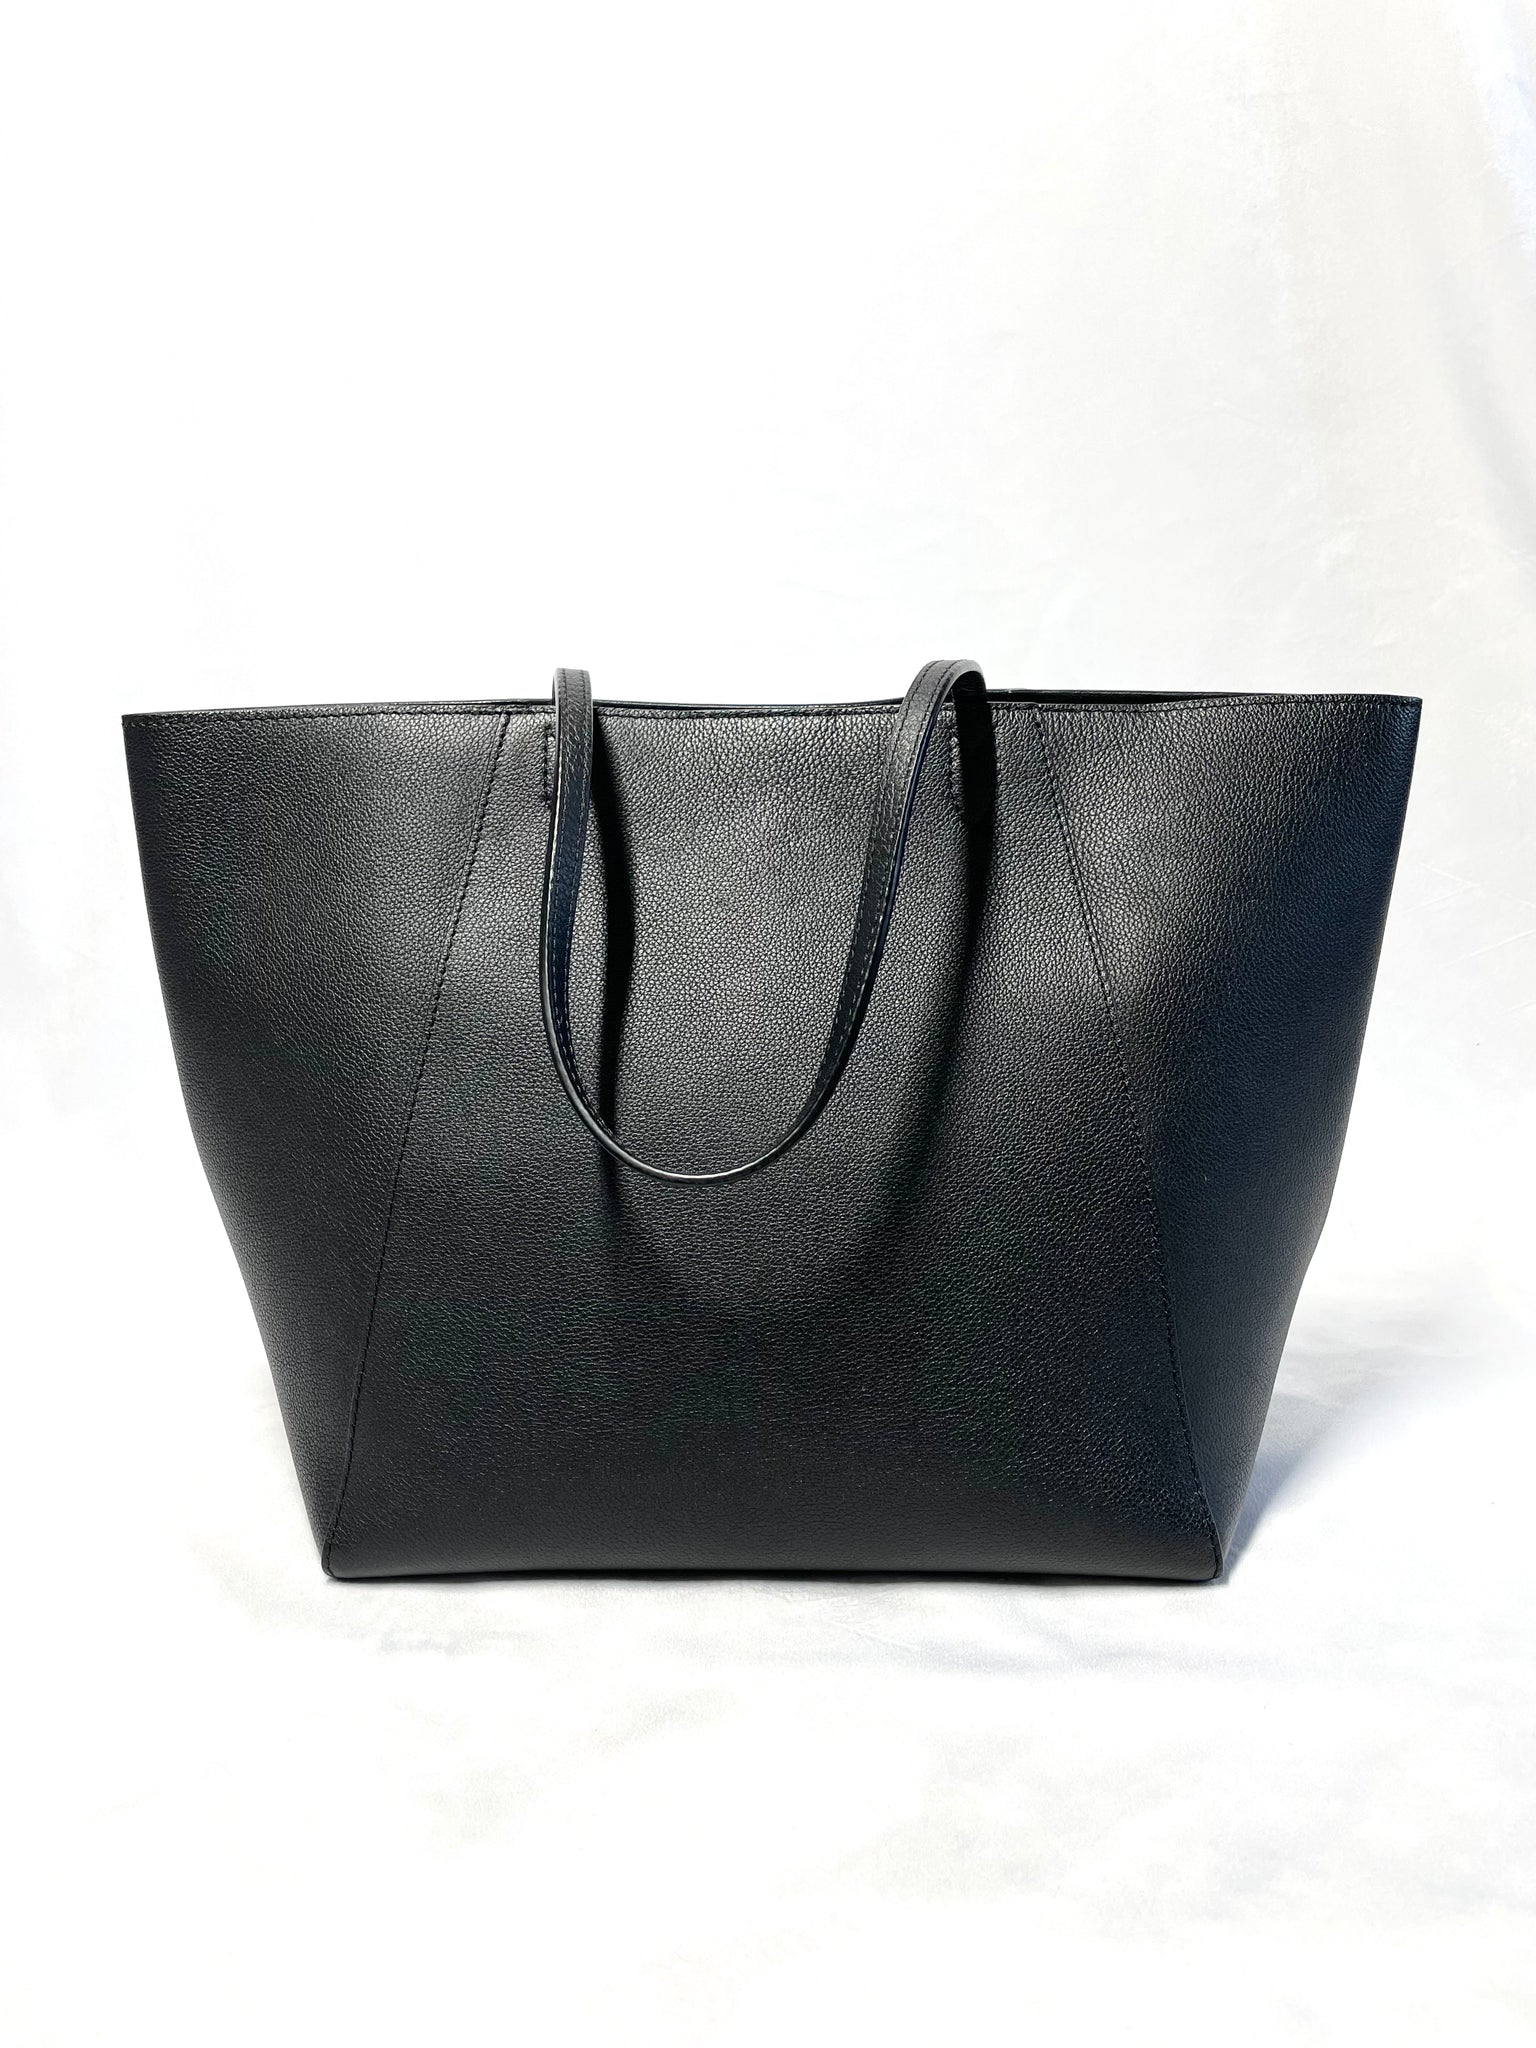 LOUIS VUITTON - NEW LV Lockme Shopper - Black Leather Shoulder Bag / T